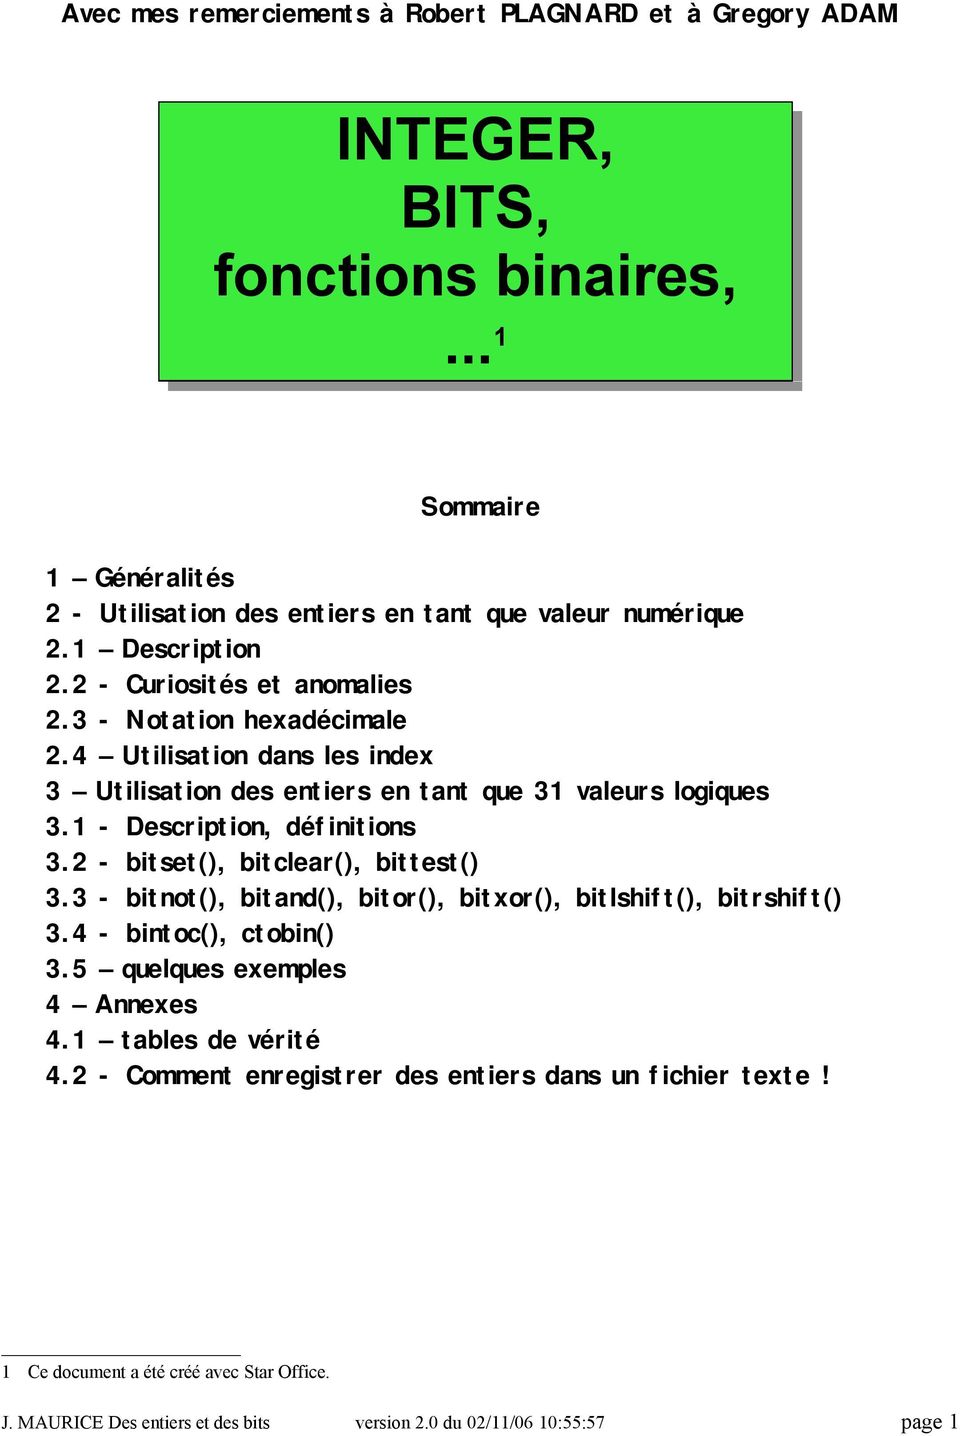 1 - Description, définitions 3.2 - bitset(), bitclear(), bittest() 3.3 - bitnot(), bitand(), bitor(), bitxor(), bitlshift(), bitrshift() 3.4 - bintoc(), ctobin() 3.